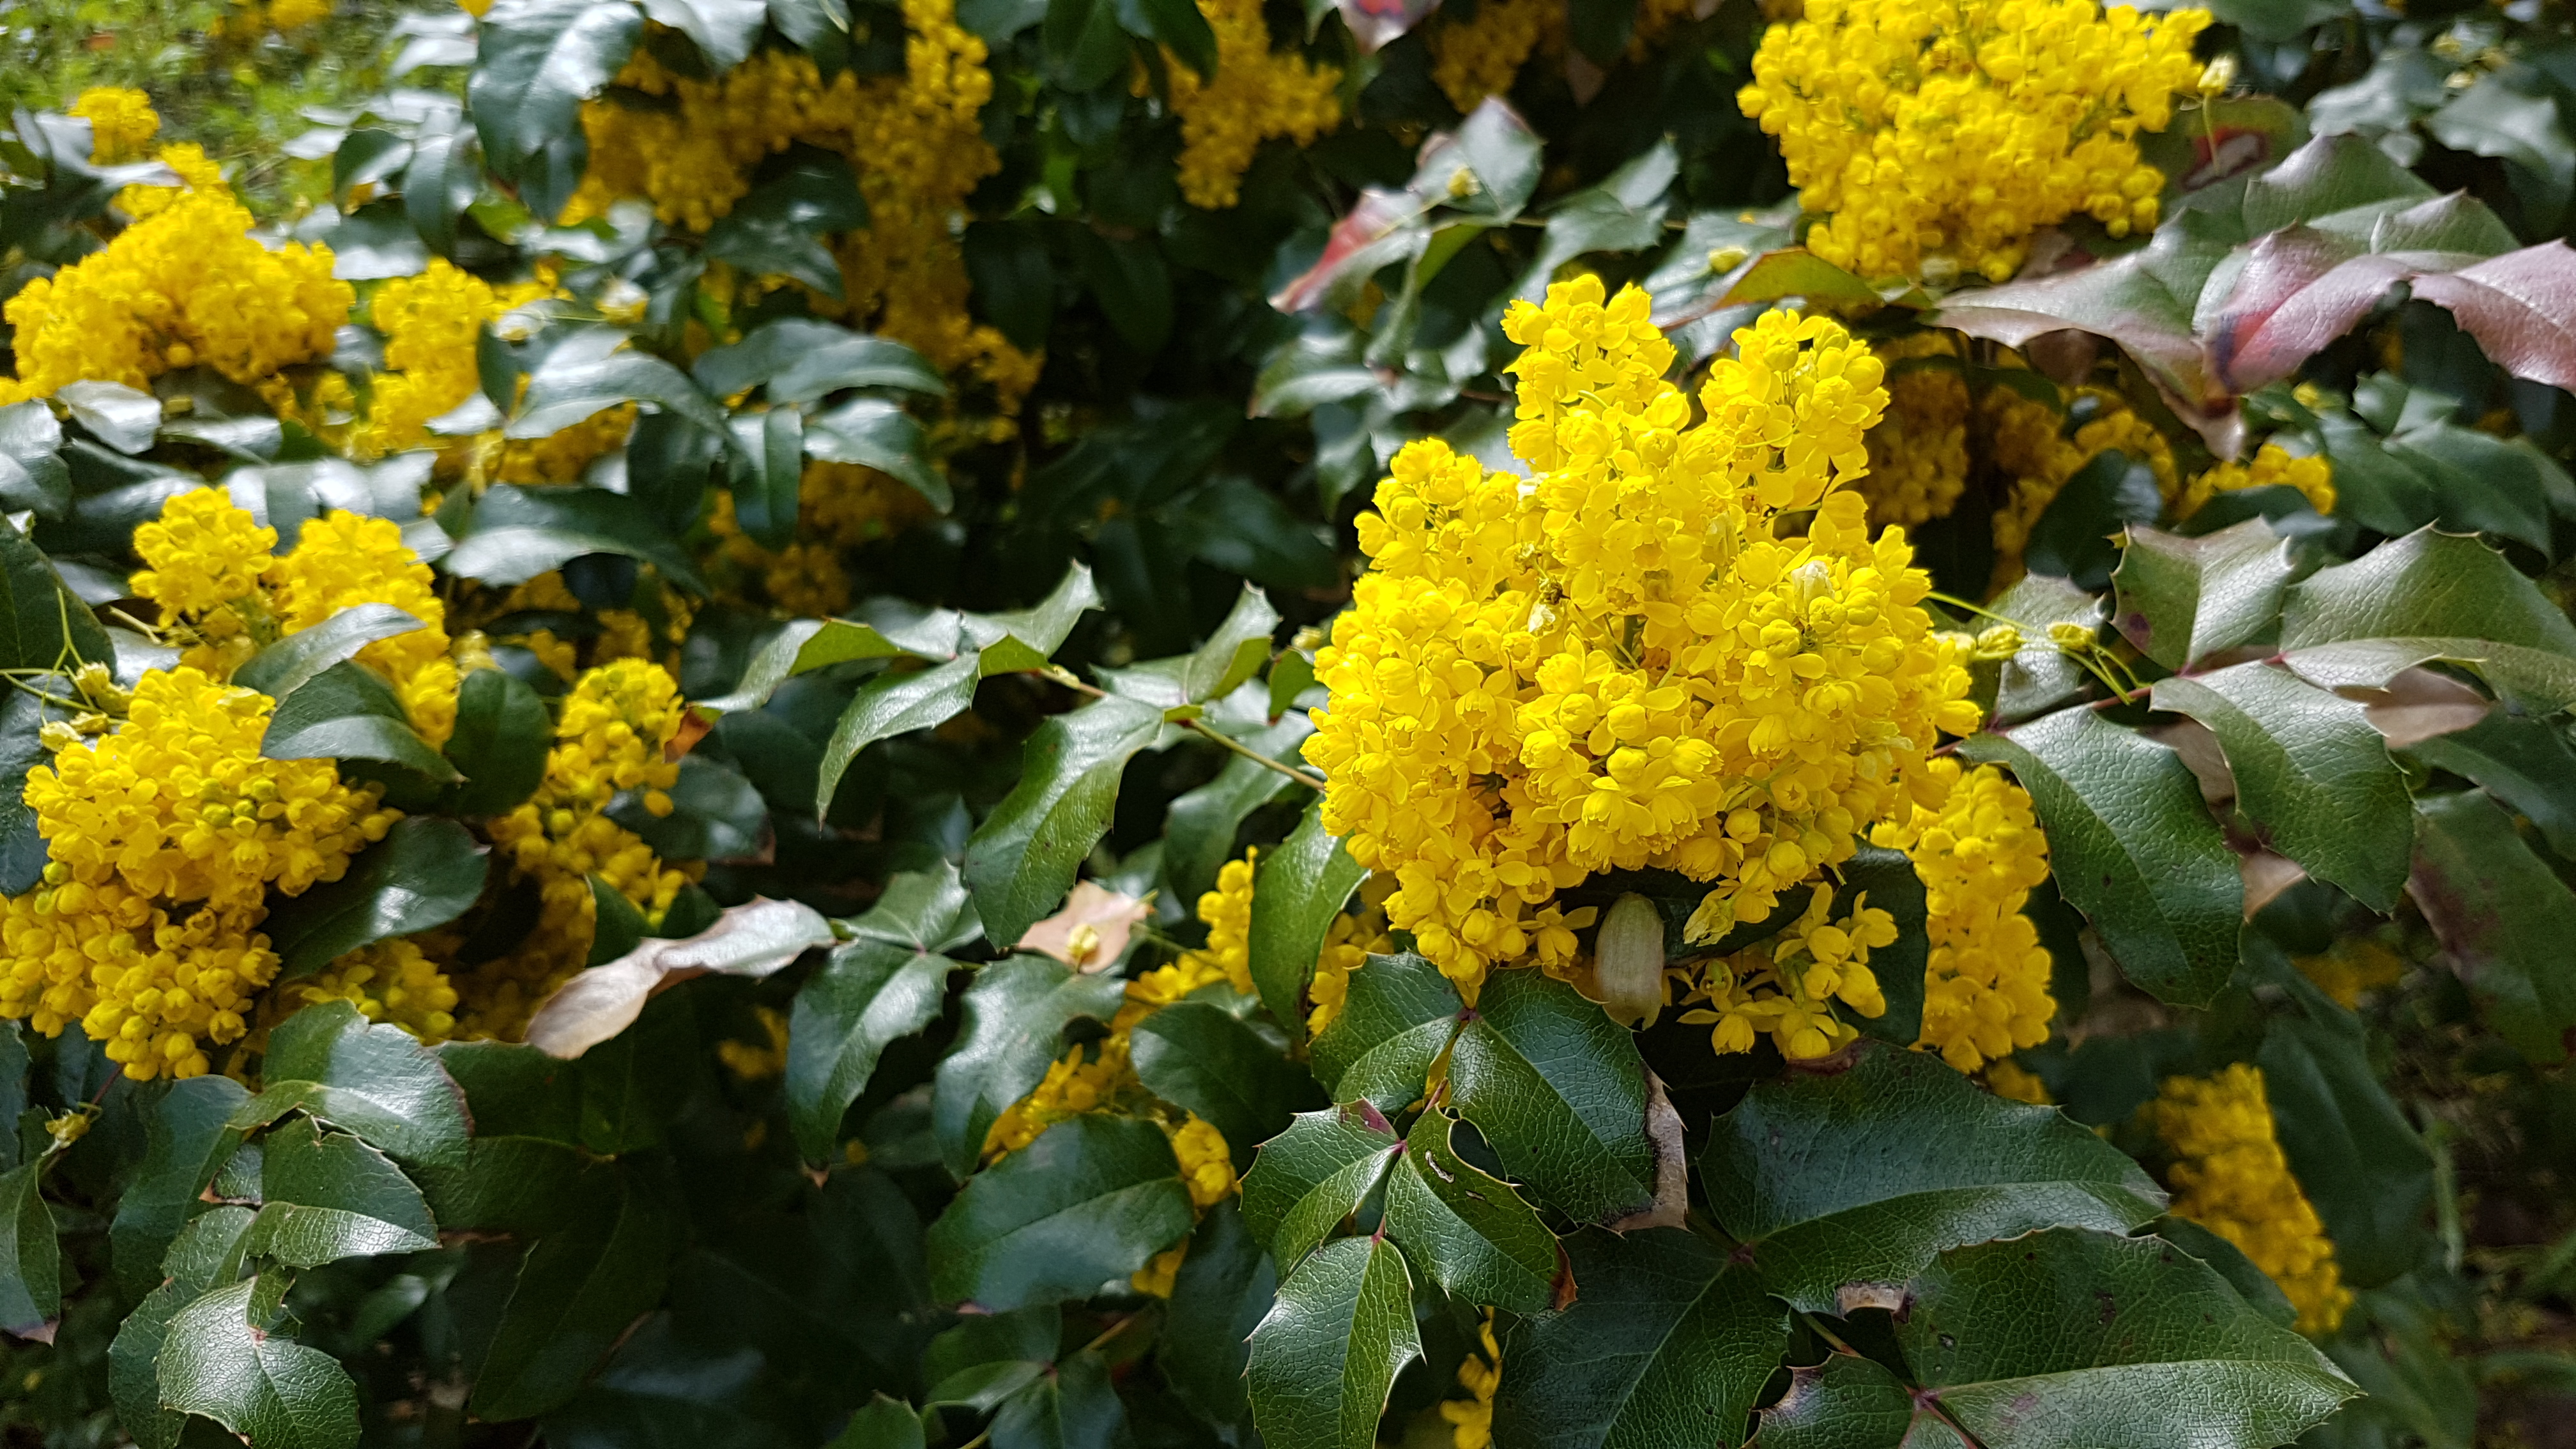 Mange små gule blomster i tette klaser, på busk med dypgrønne blader